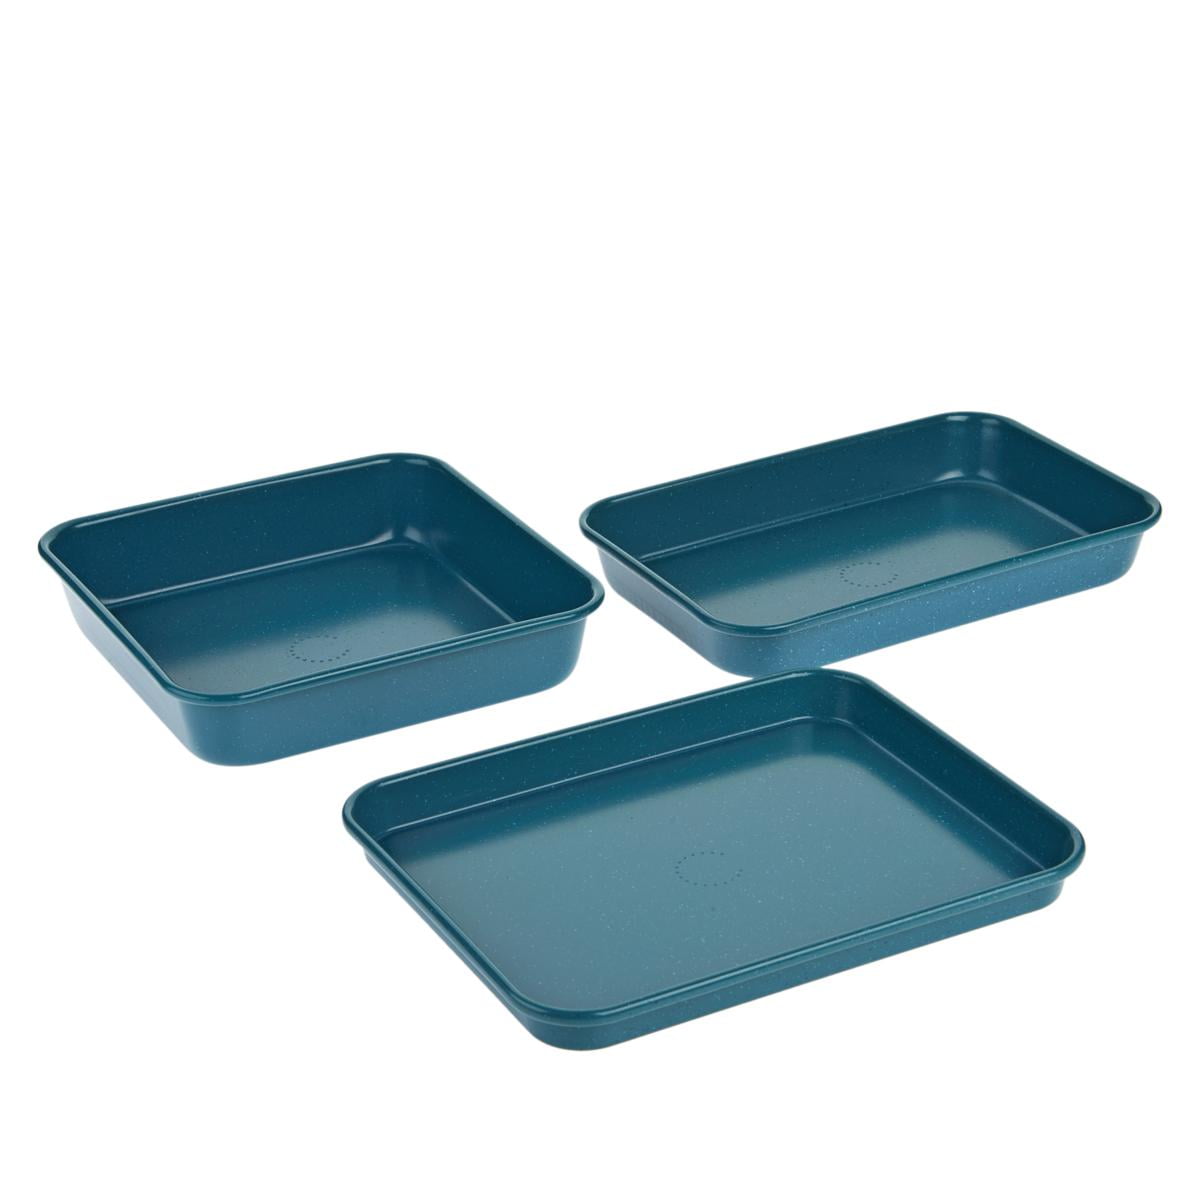 Curtis Stone Nonstick Ceramic Baking Platter Set - 20678967